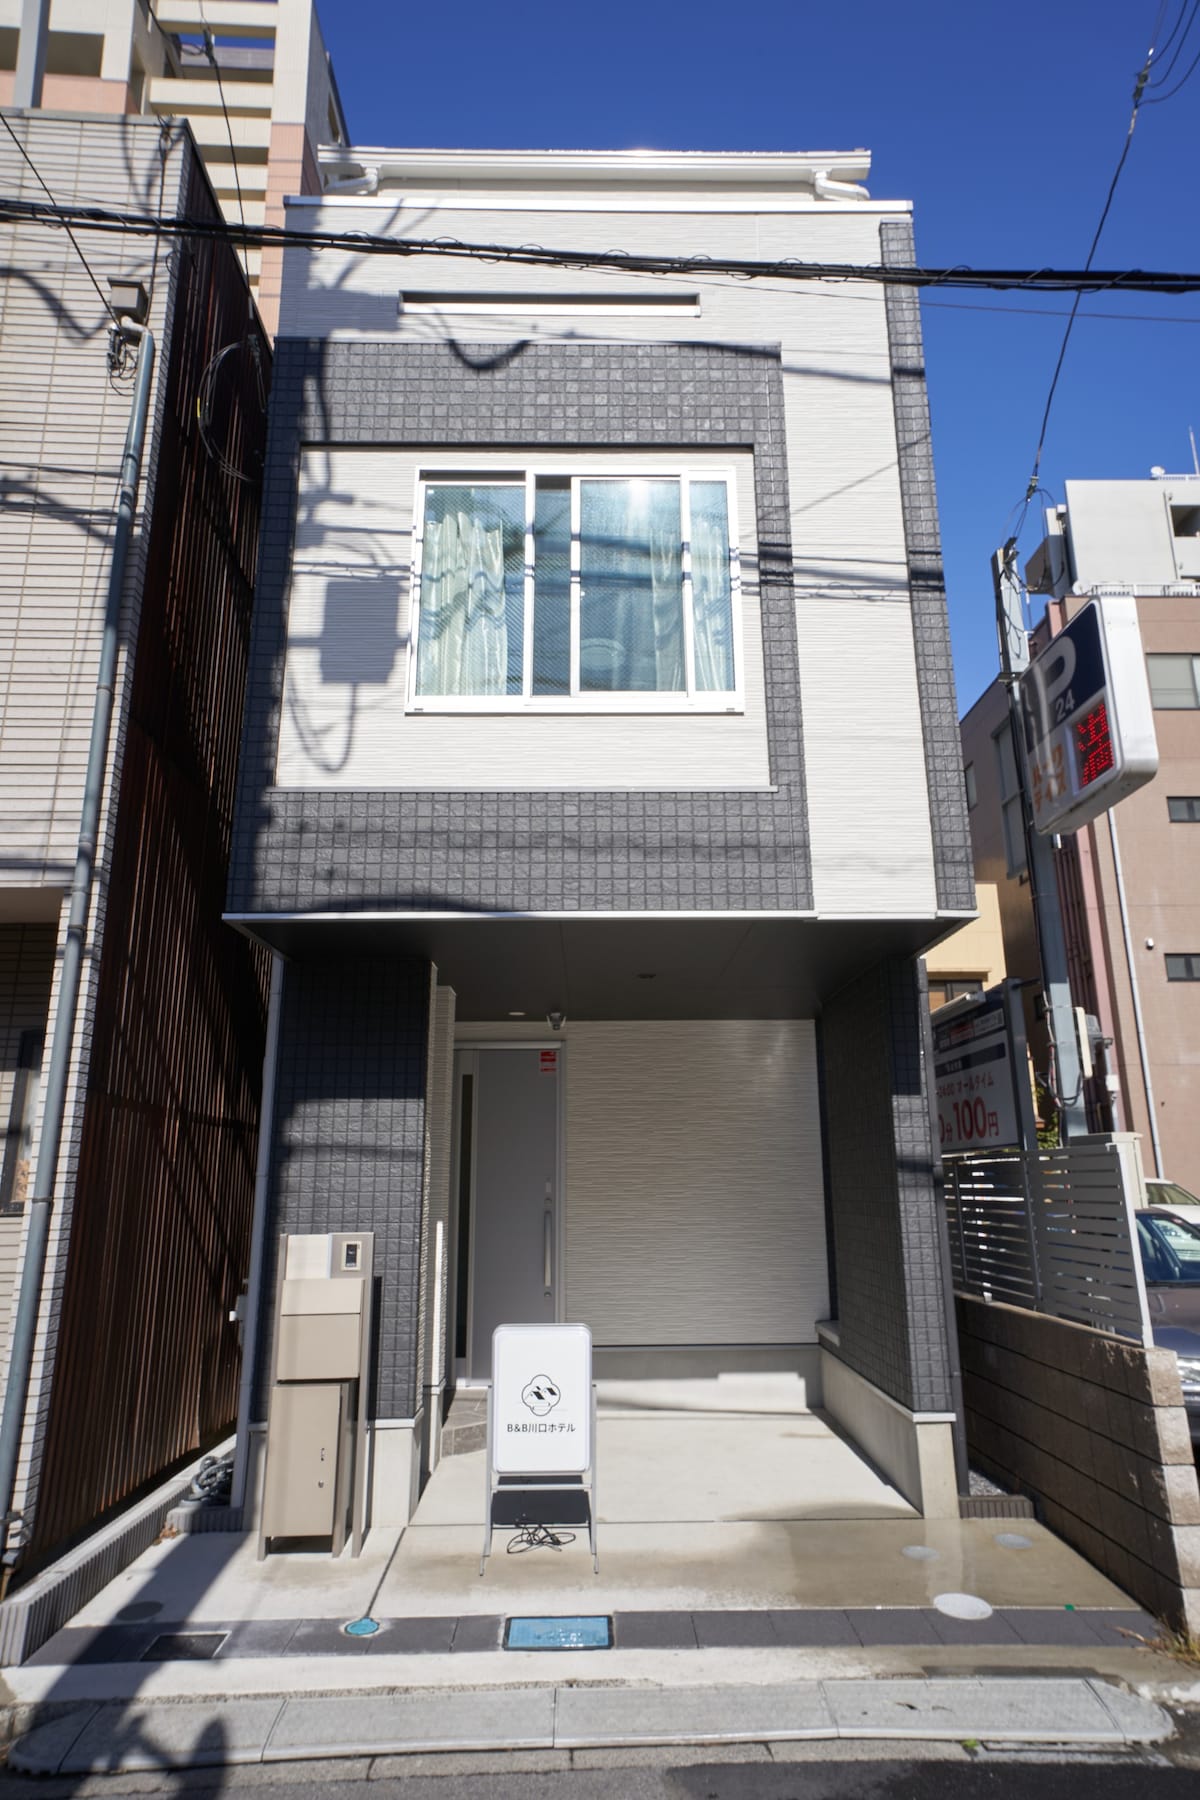 川口駅走路4分钟的 一户建 新房子 到上野18分钟 到池袋18分钟 门口有停车位 免费停车